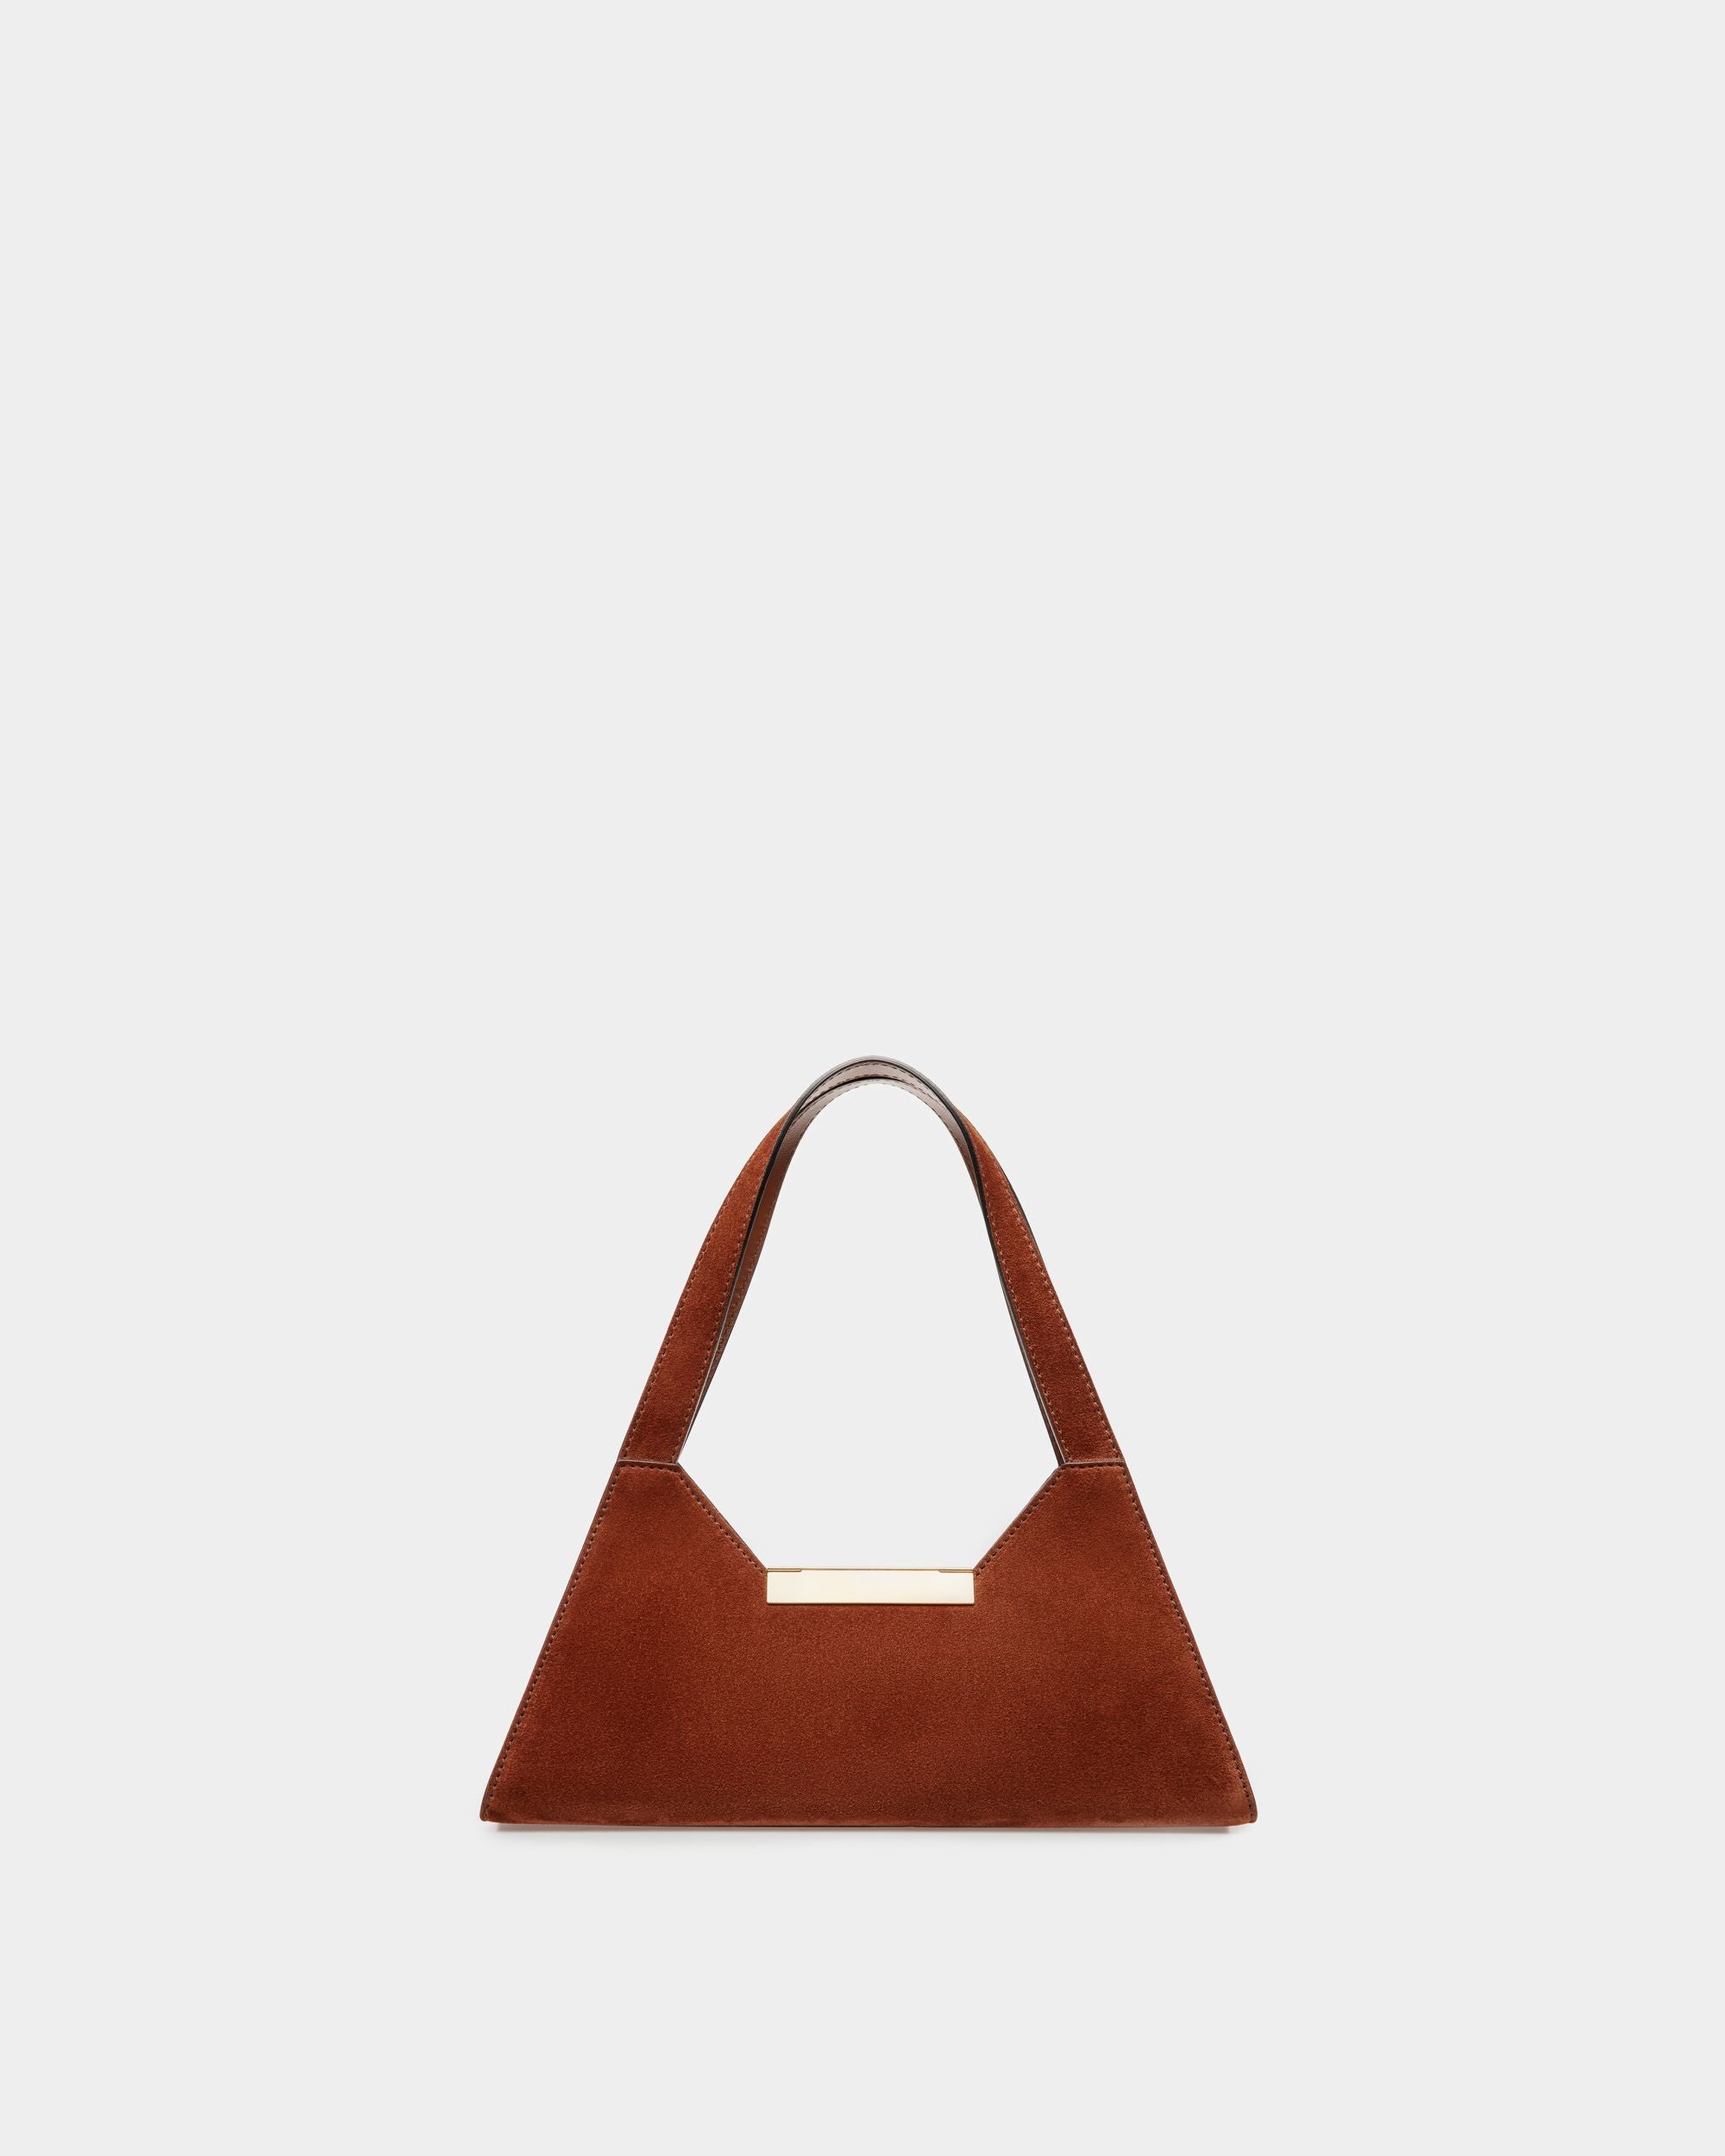 Trilliant Small Shoulder Bag | Women's Shoulder Bag | Brown Suede Leather | Bally | Still Life Back